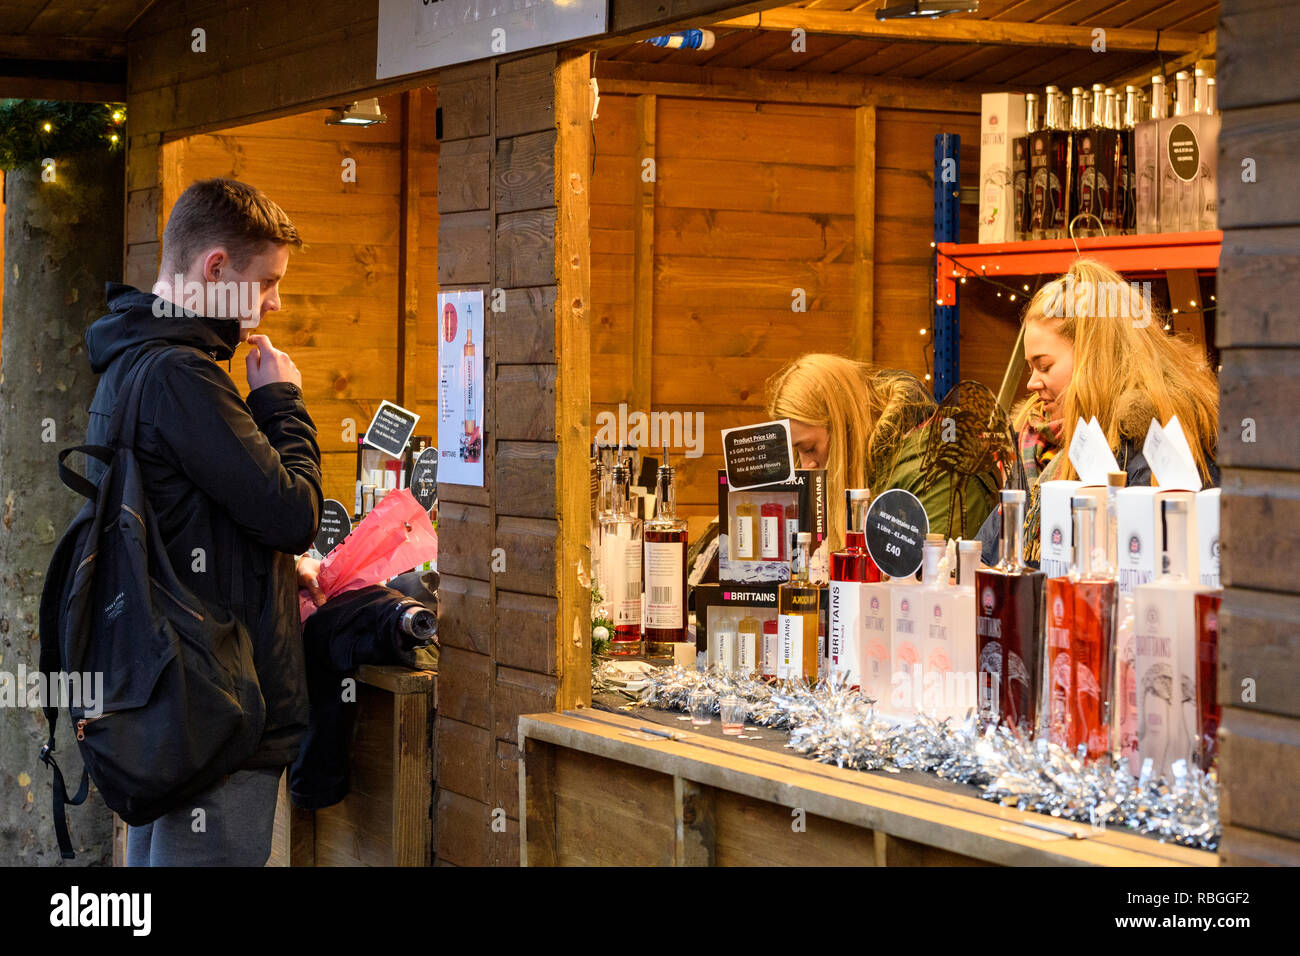 Le persone che lavorano nella bancarella vendendo Brittain il gin e la vodka e il potenziale cliente al Mercato di Natale guardando il listino prezzi sul display - York, Inghilterra, Regno Unito. Foto Stock